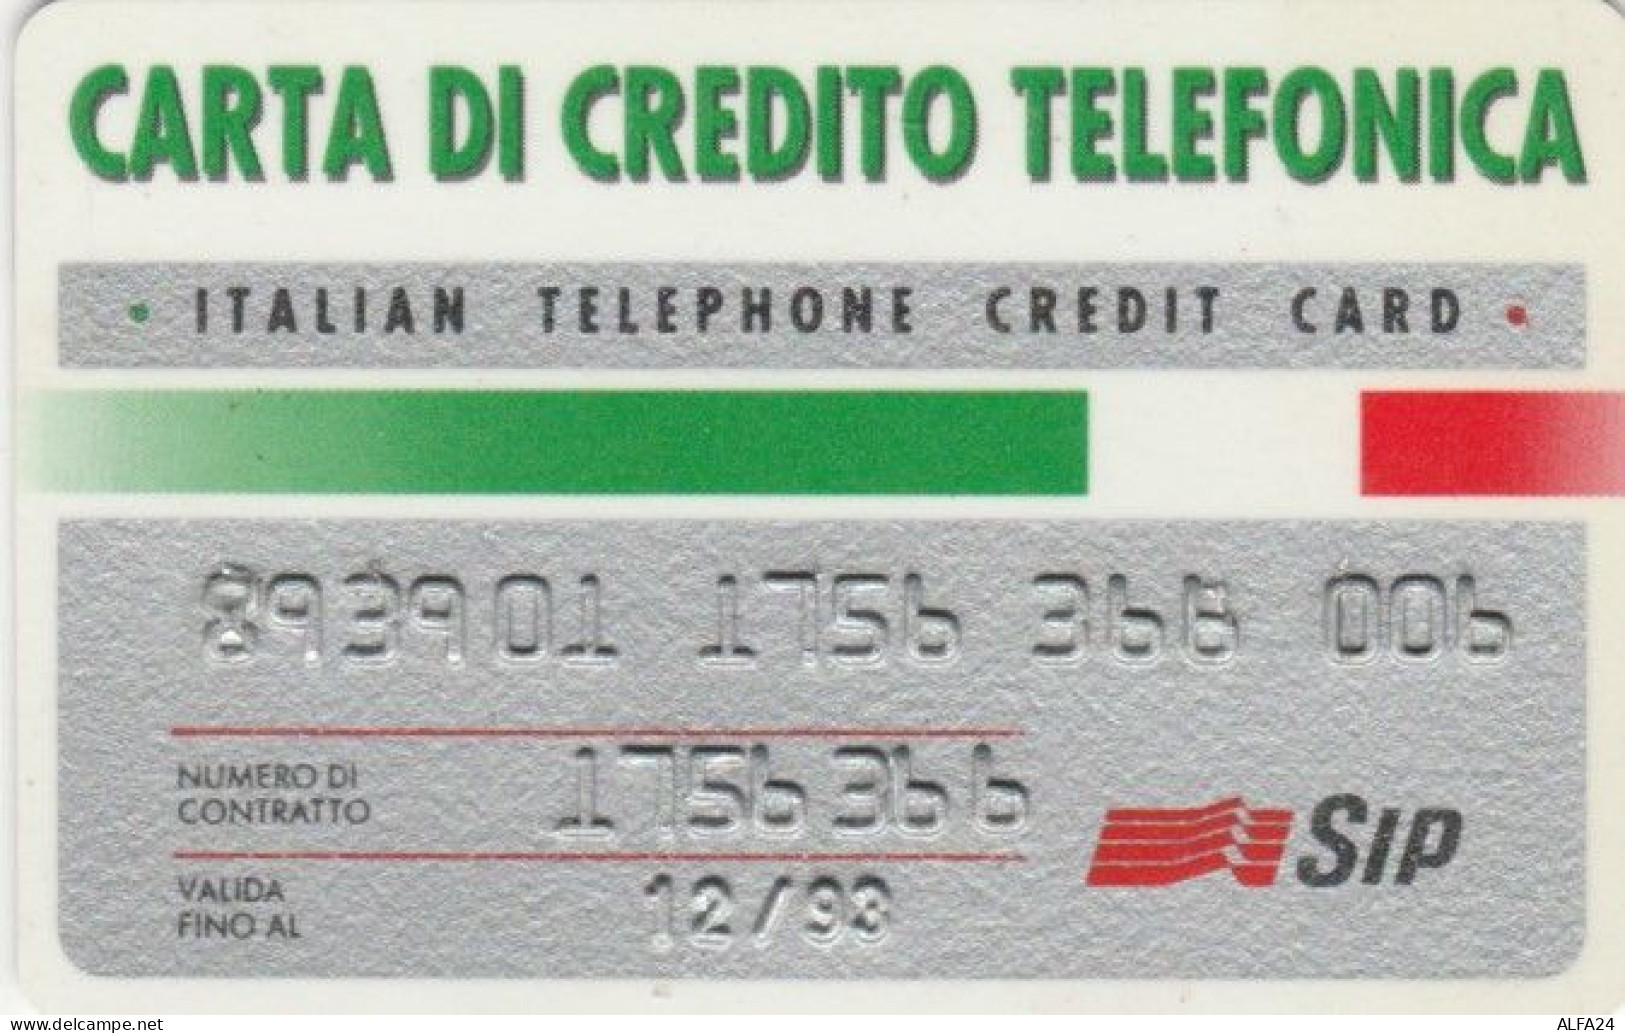 CARTA DI CREDITO TELEFONICA 12/93 (PY1648 - Sonderzwecke